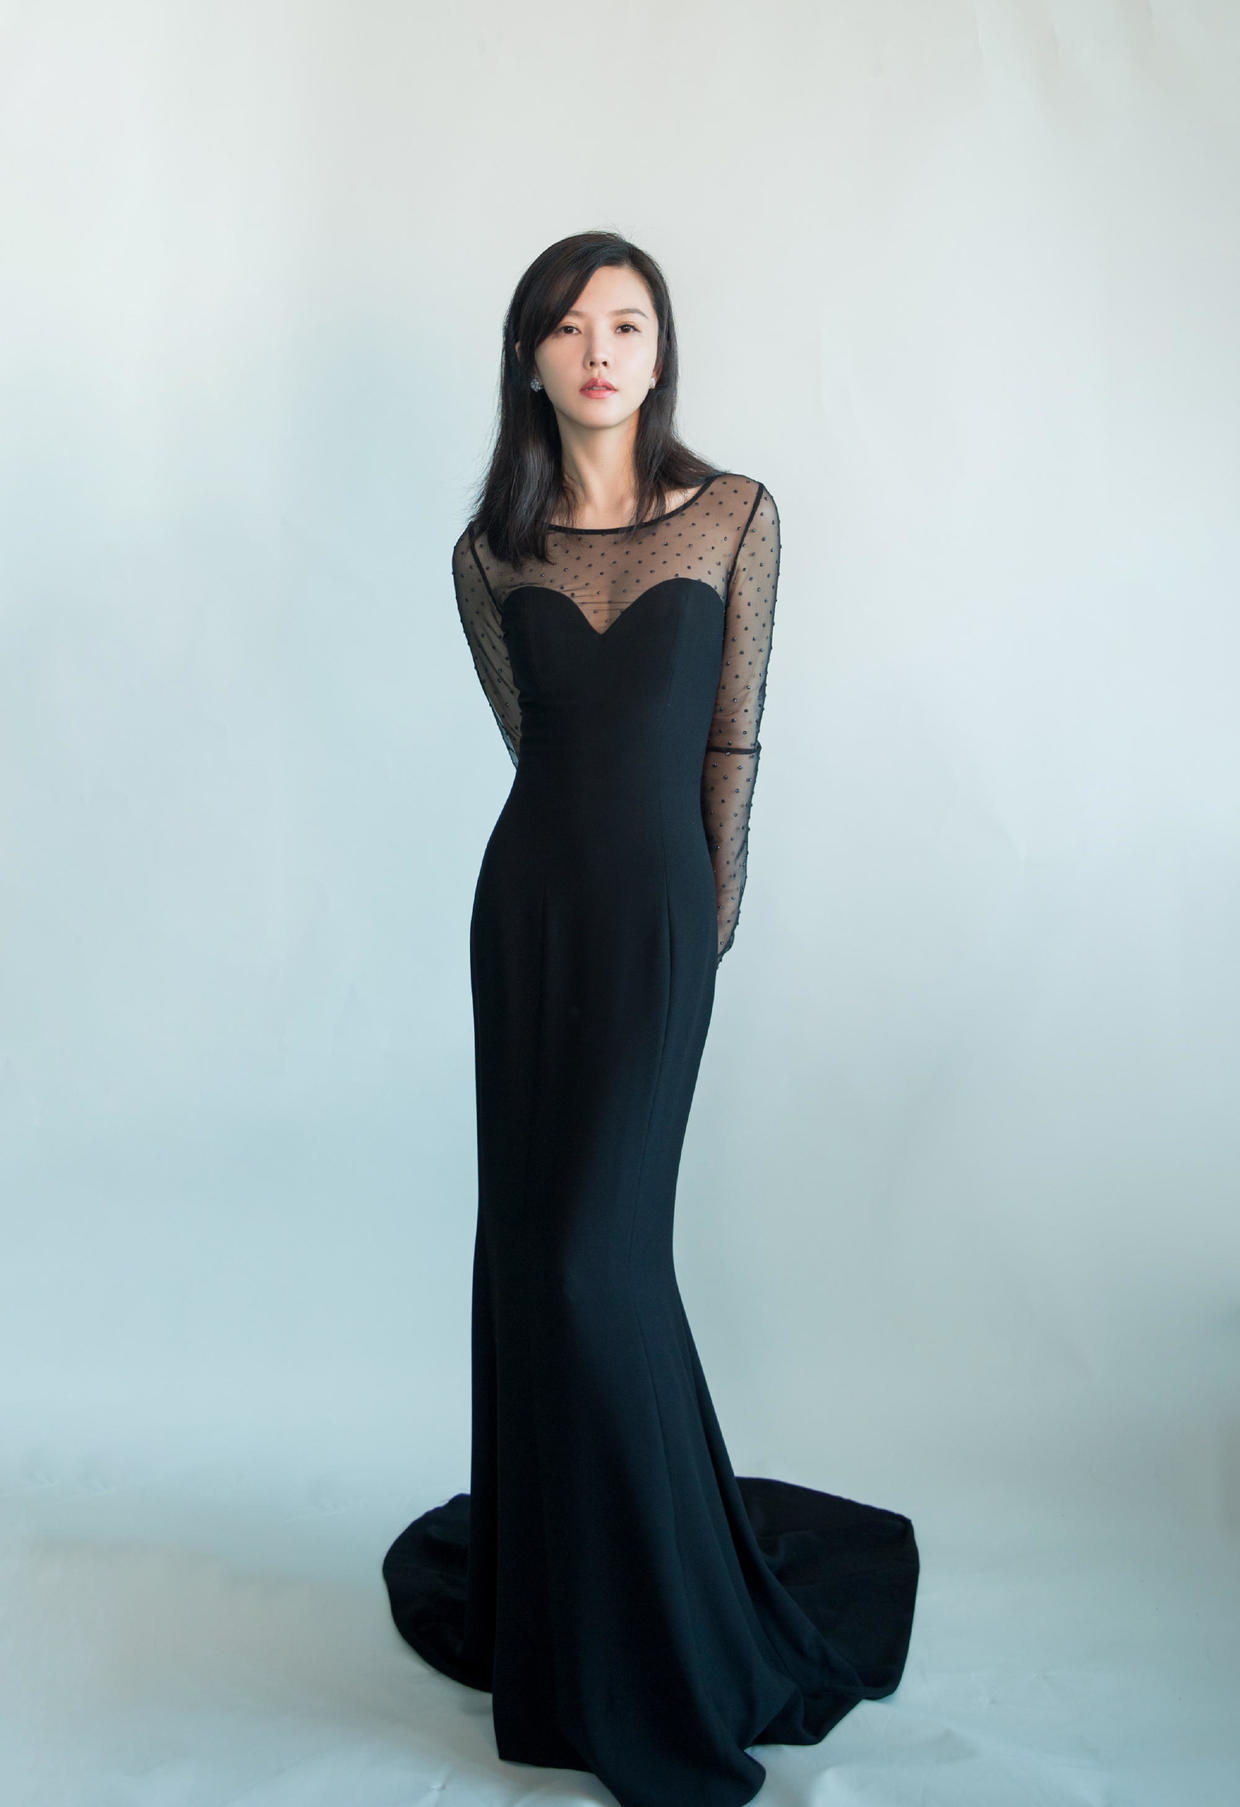 原创杨子姗再现尤物身材黑色薄纱连衣裙性感优雅凹凸身材超撩人